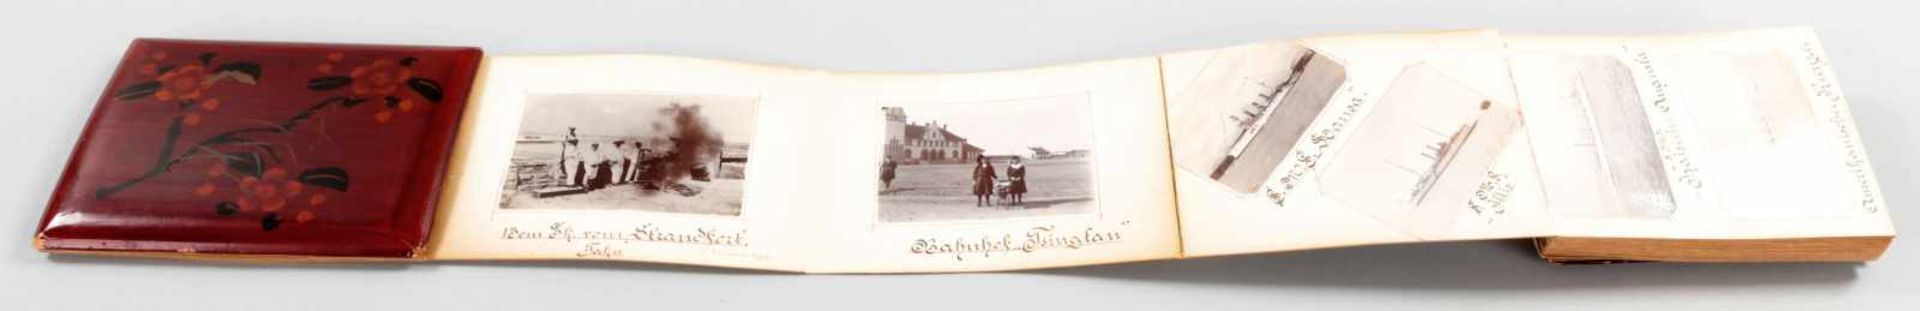 FotoalbumLack/Papier, China/Japan u.a., um 1900 In Rotlack-Leporello m. applizierten Elfenbeinköpfen